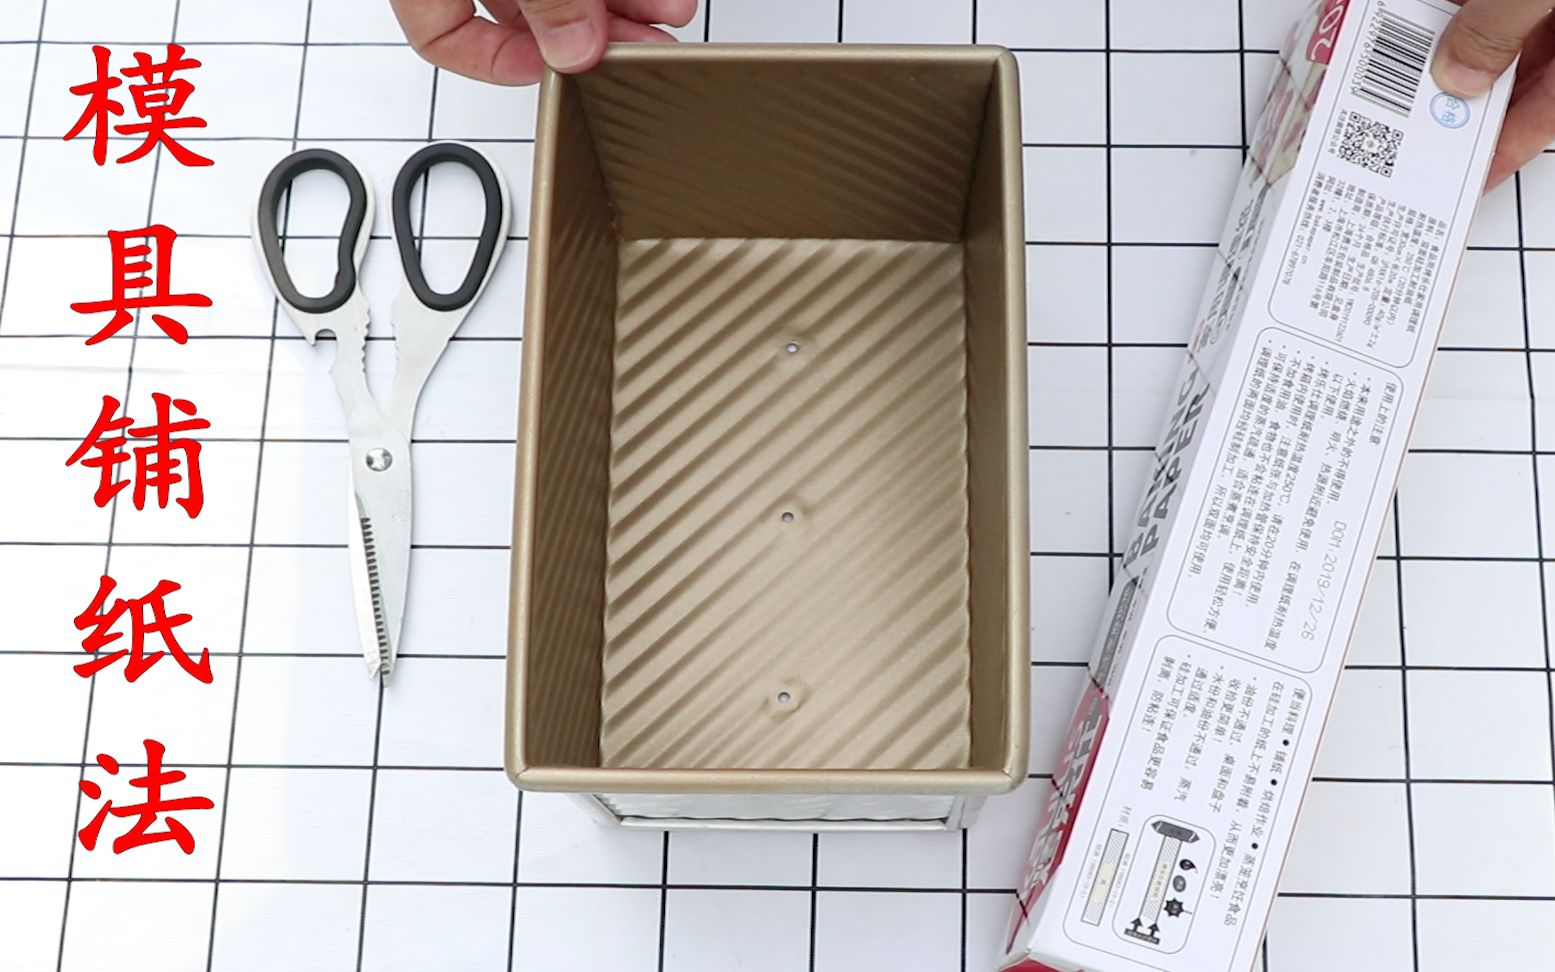 各种模具土司盒铺纸技巧，简单快速，赶紧收藏起来，太实用了